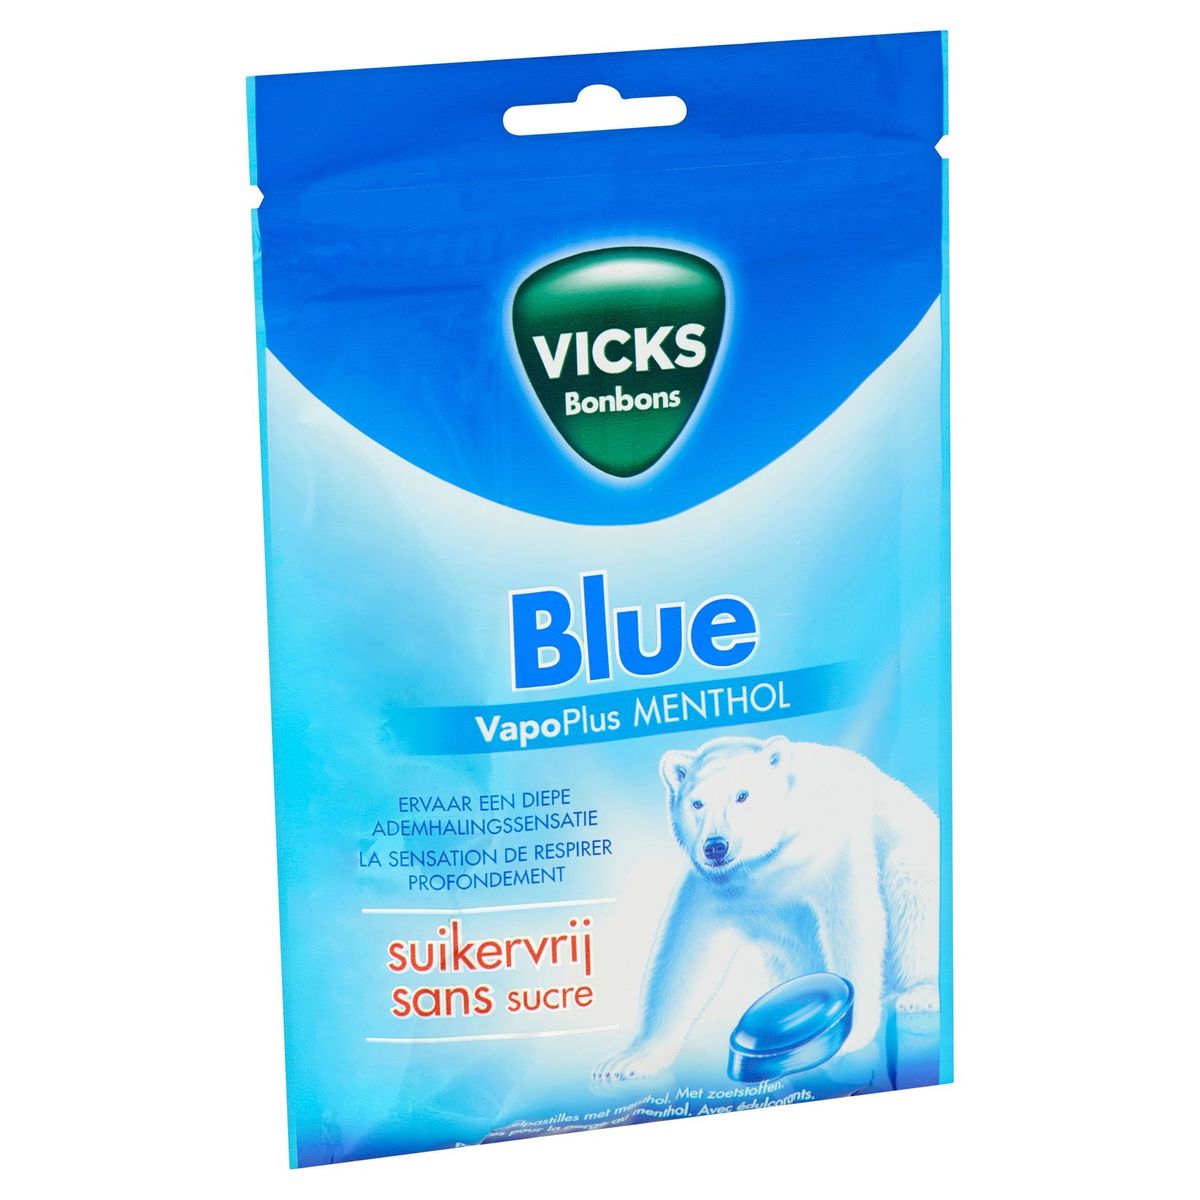 Vicks Bonbons Blue VapoPlus Menthol 72 g